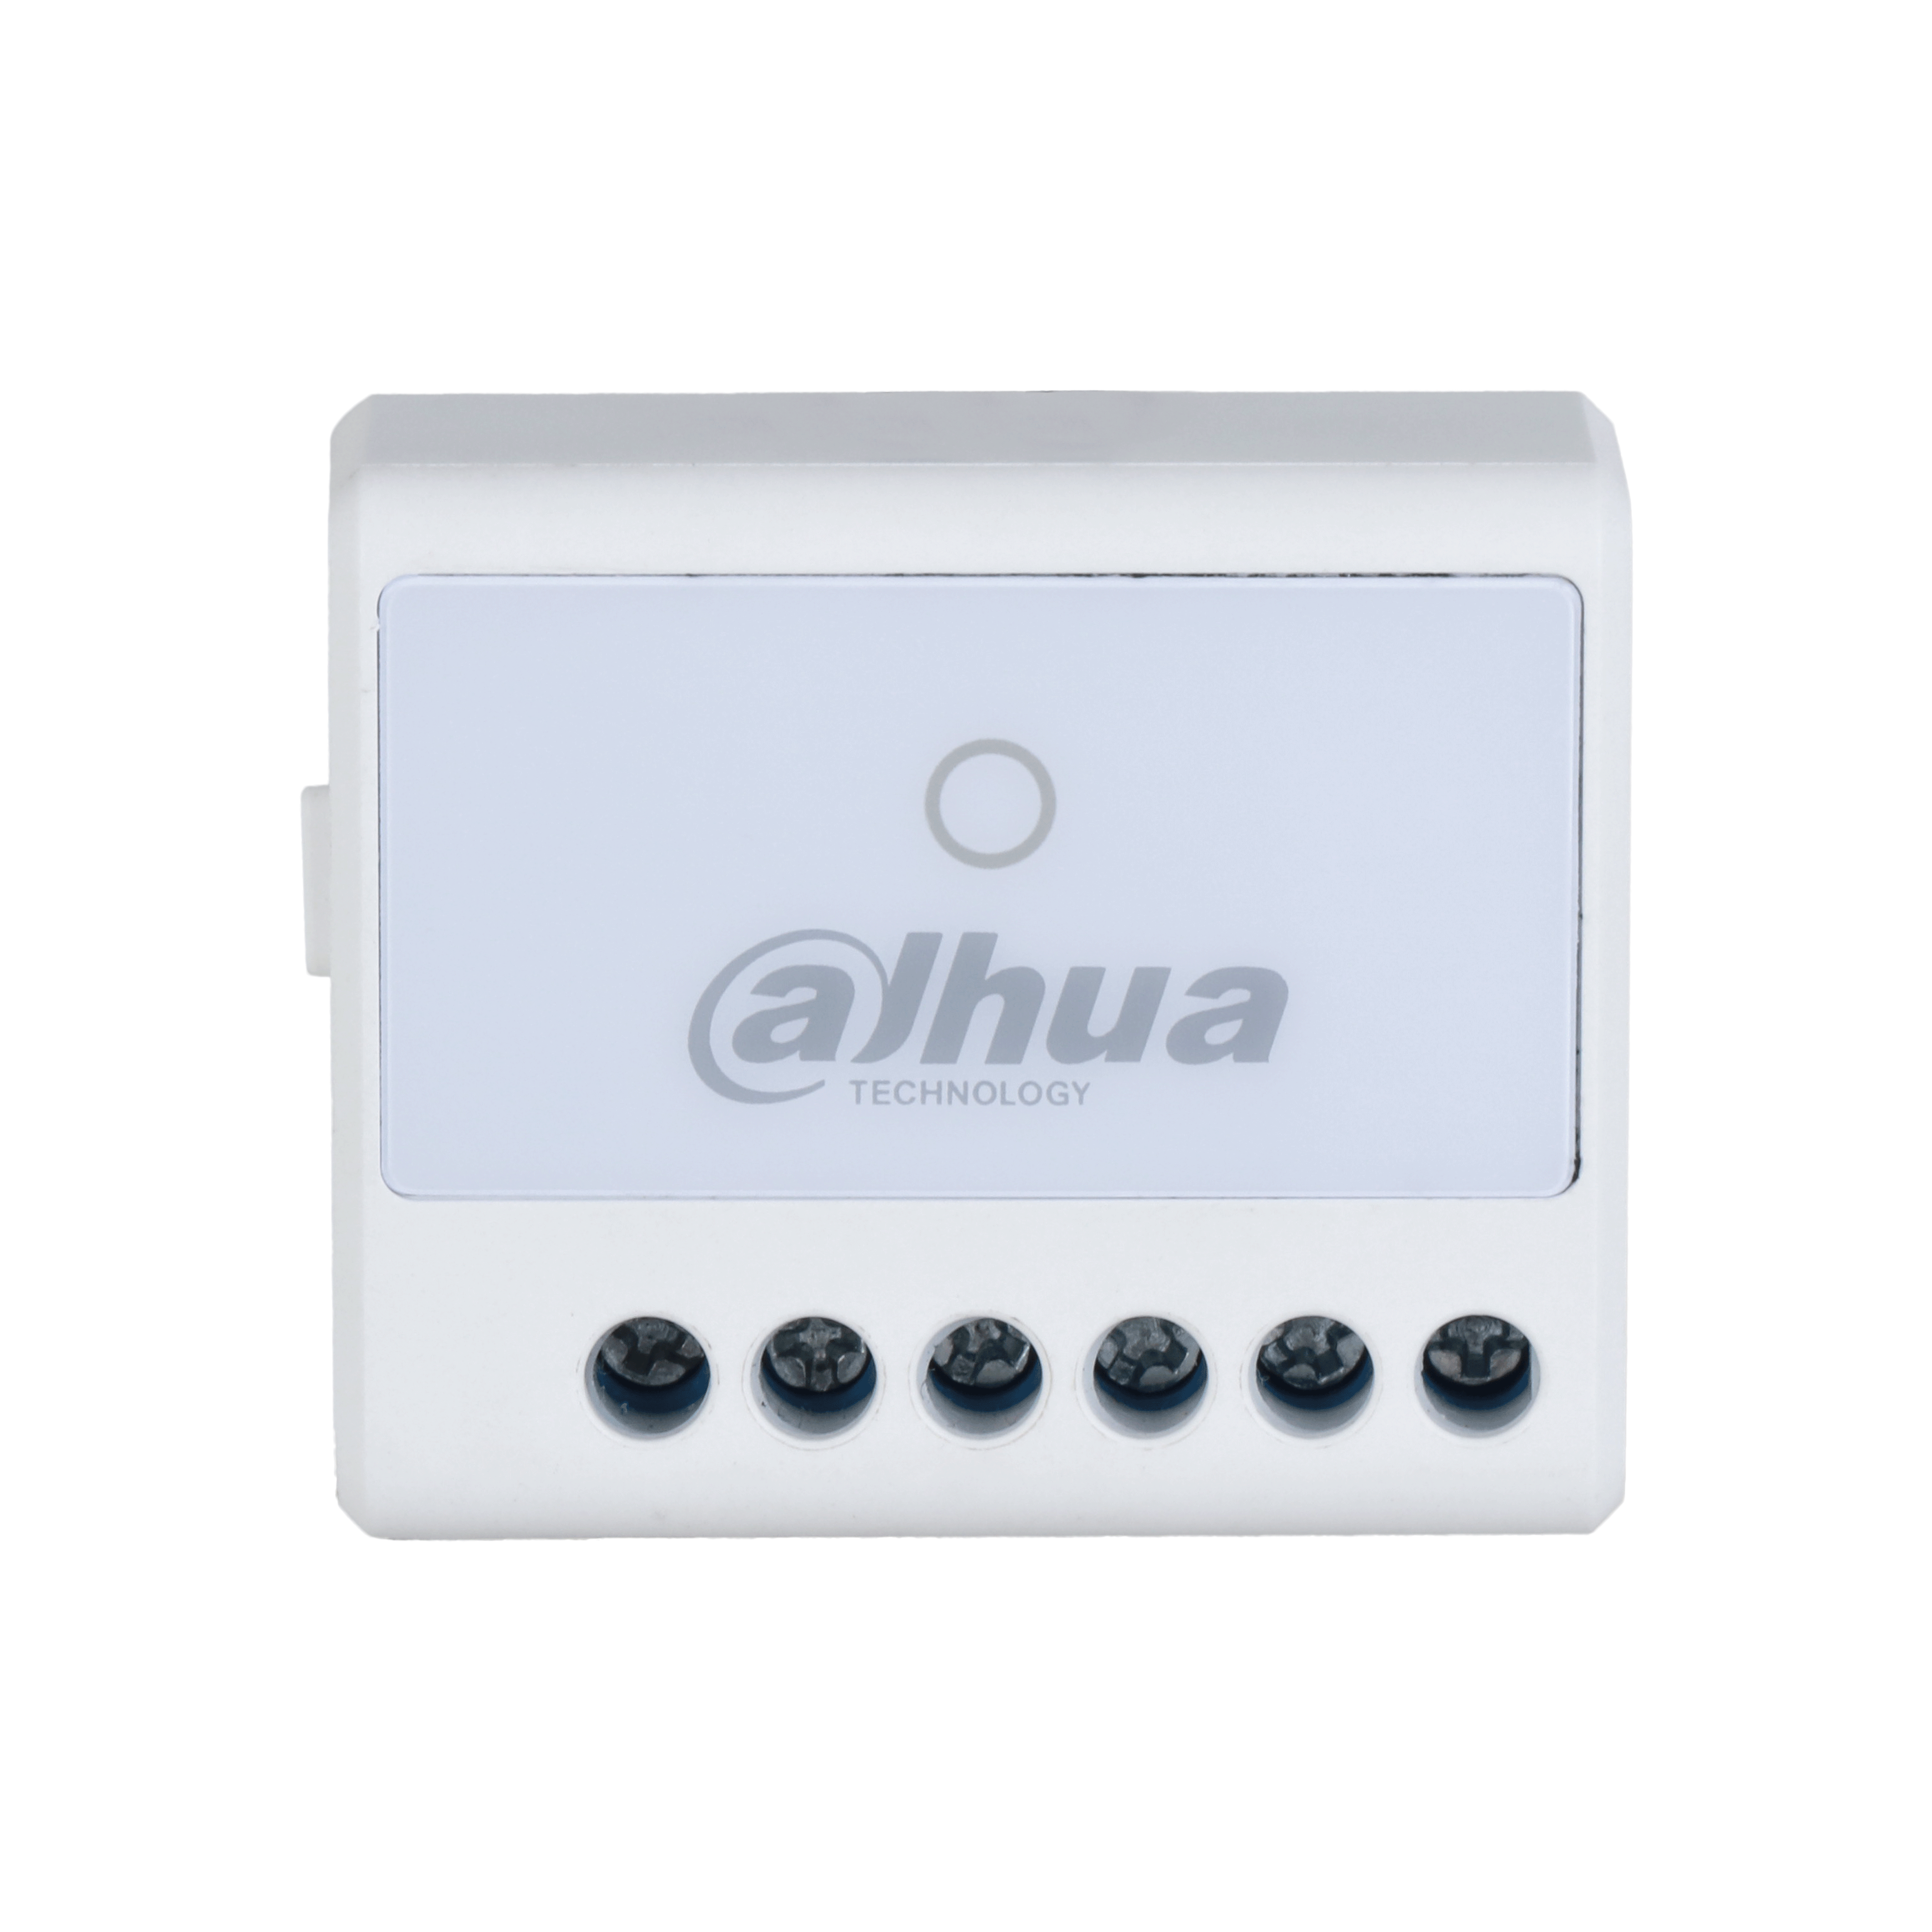 DAHUA ARM7011-W2(868) Dahua Wireless Relay